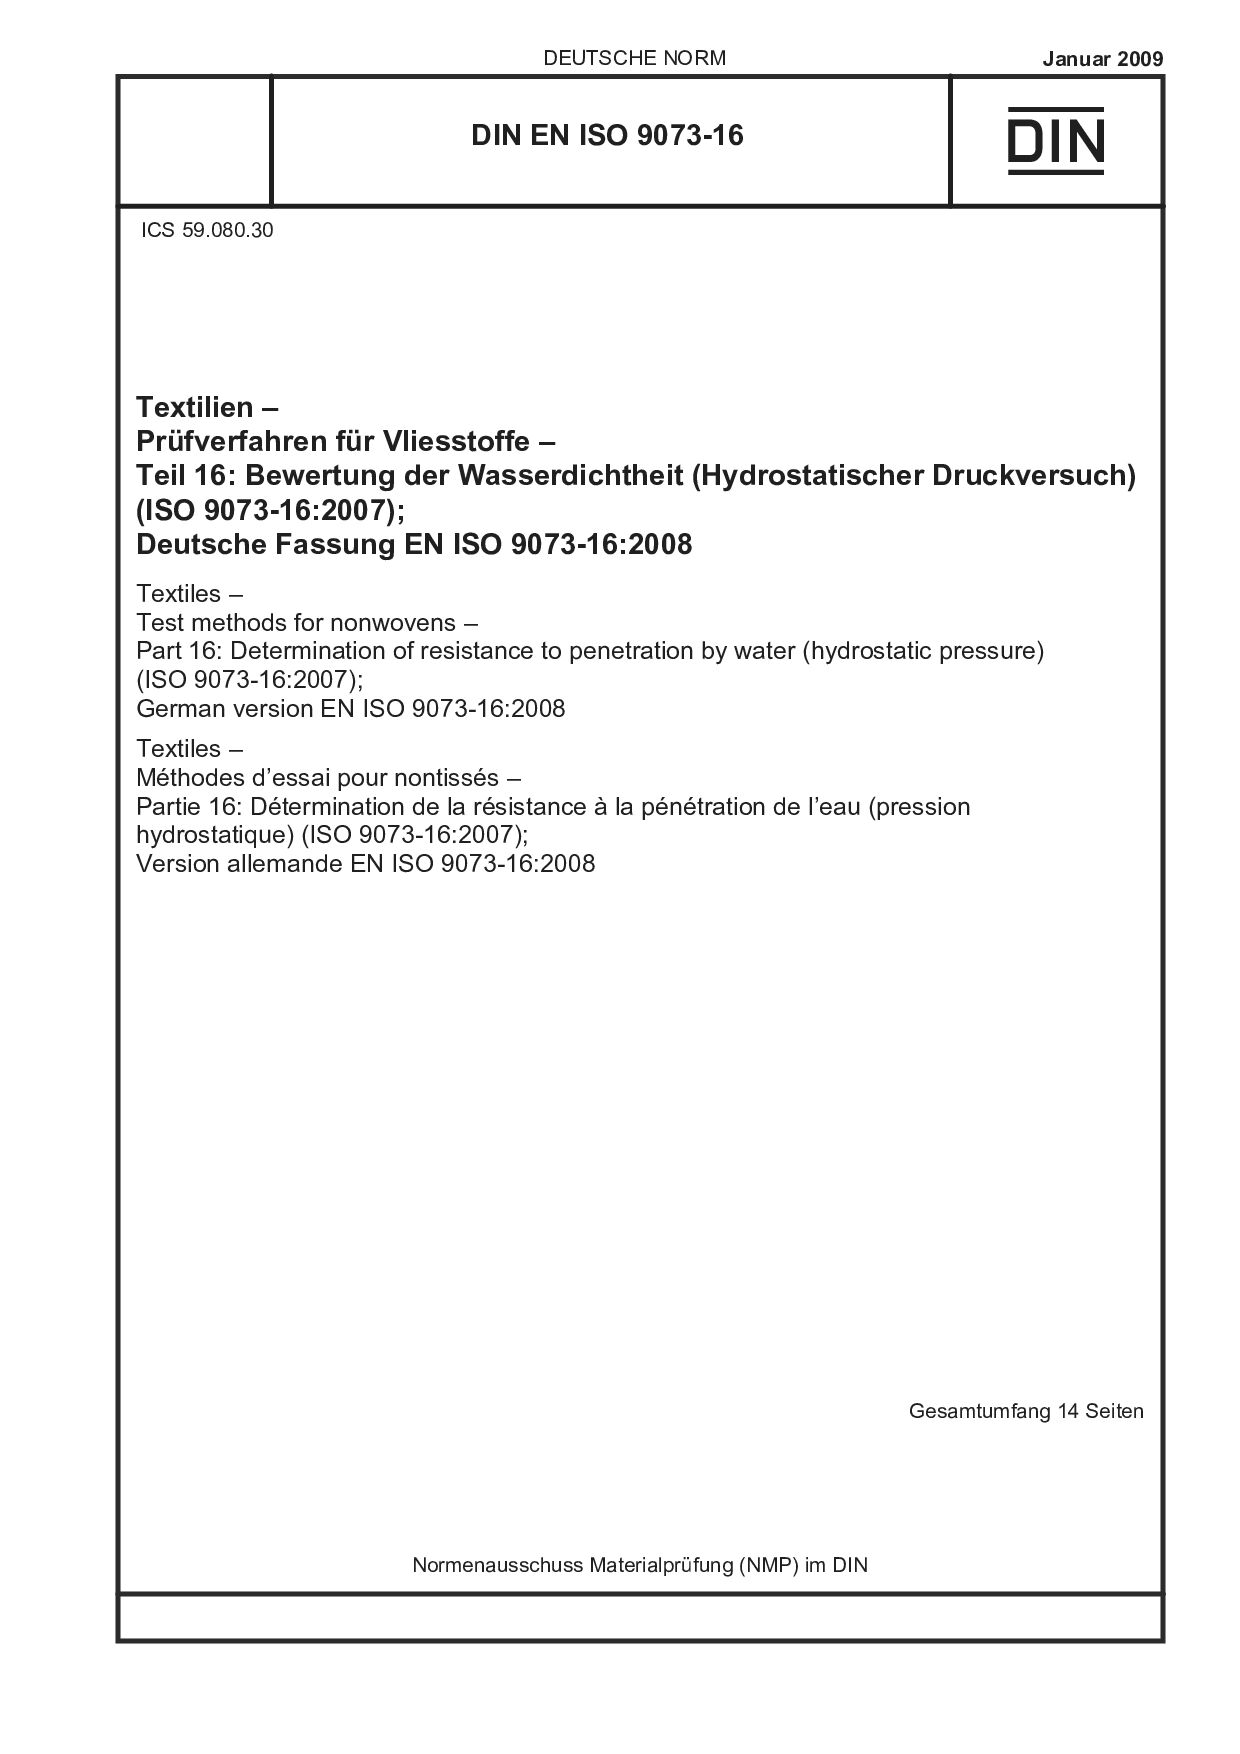 DIN EN ISO 9073-16:2009封面图